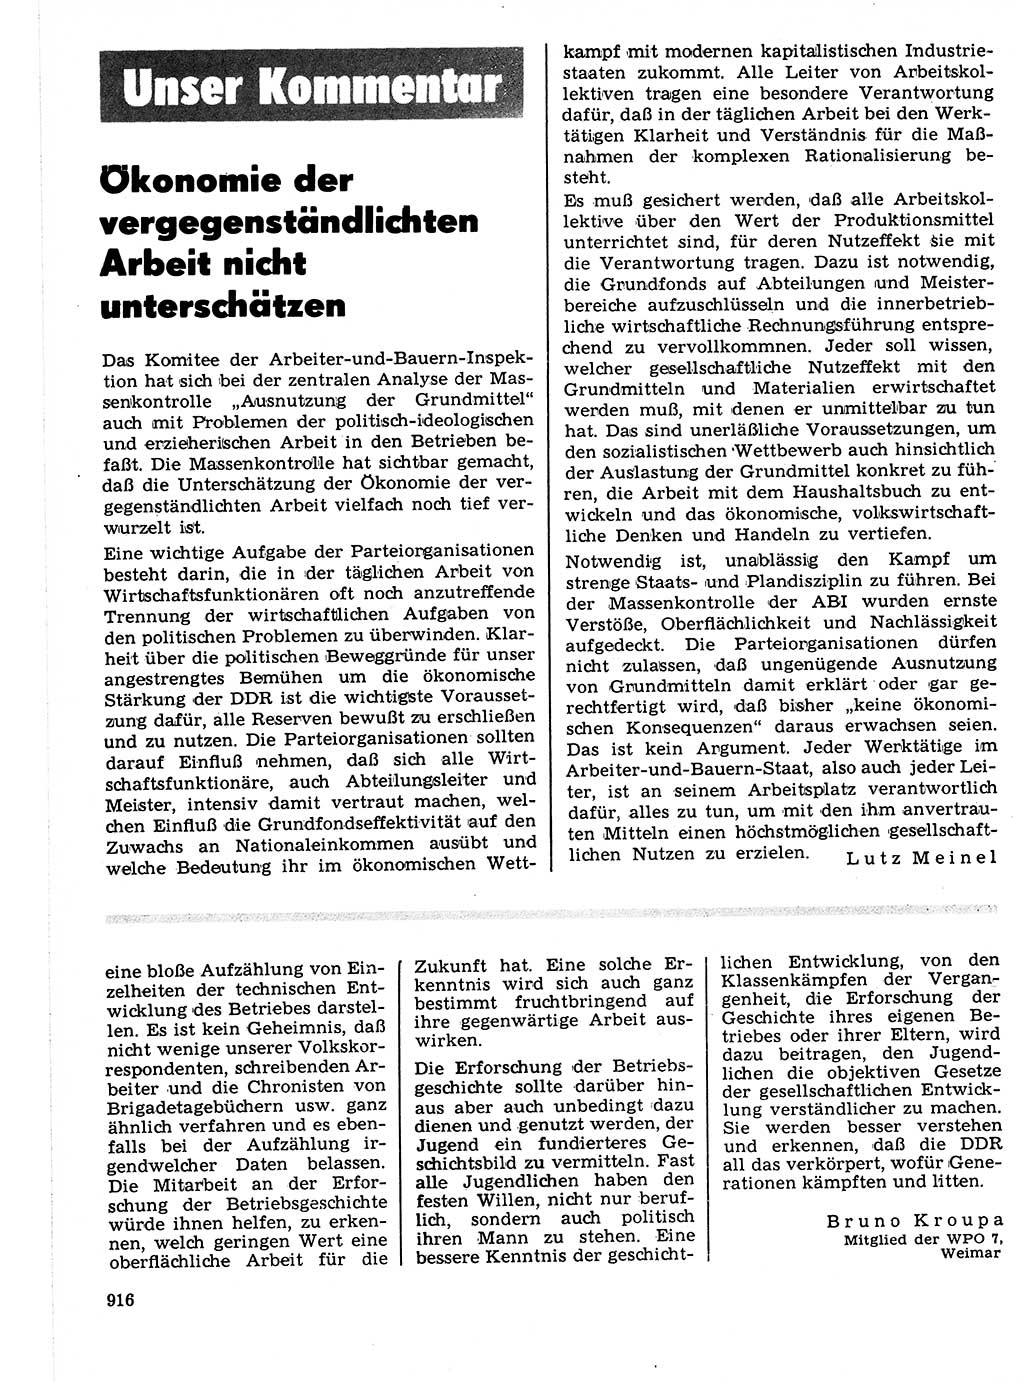 Neuer Weg (NW), Organ des Zentralkomitees (ZK) der SED (Sozialistische Einheitspartei Deutschlands) für Fragen des Parteilebens, 21. Jahrgang [Deutsche Demokratische Republik (DDR)] 1966, Seite 916 (NW ZK SED DDR 1966, S. 916)